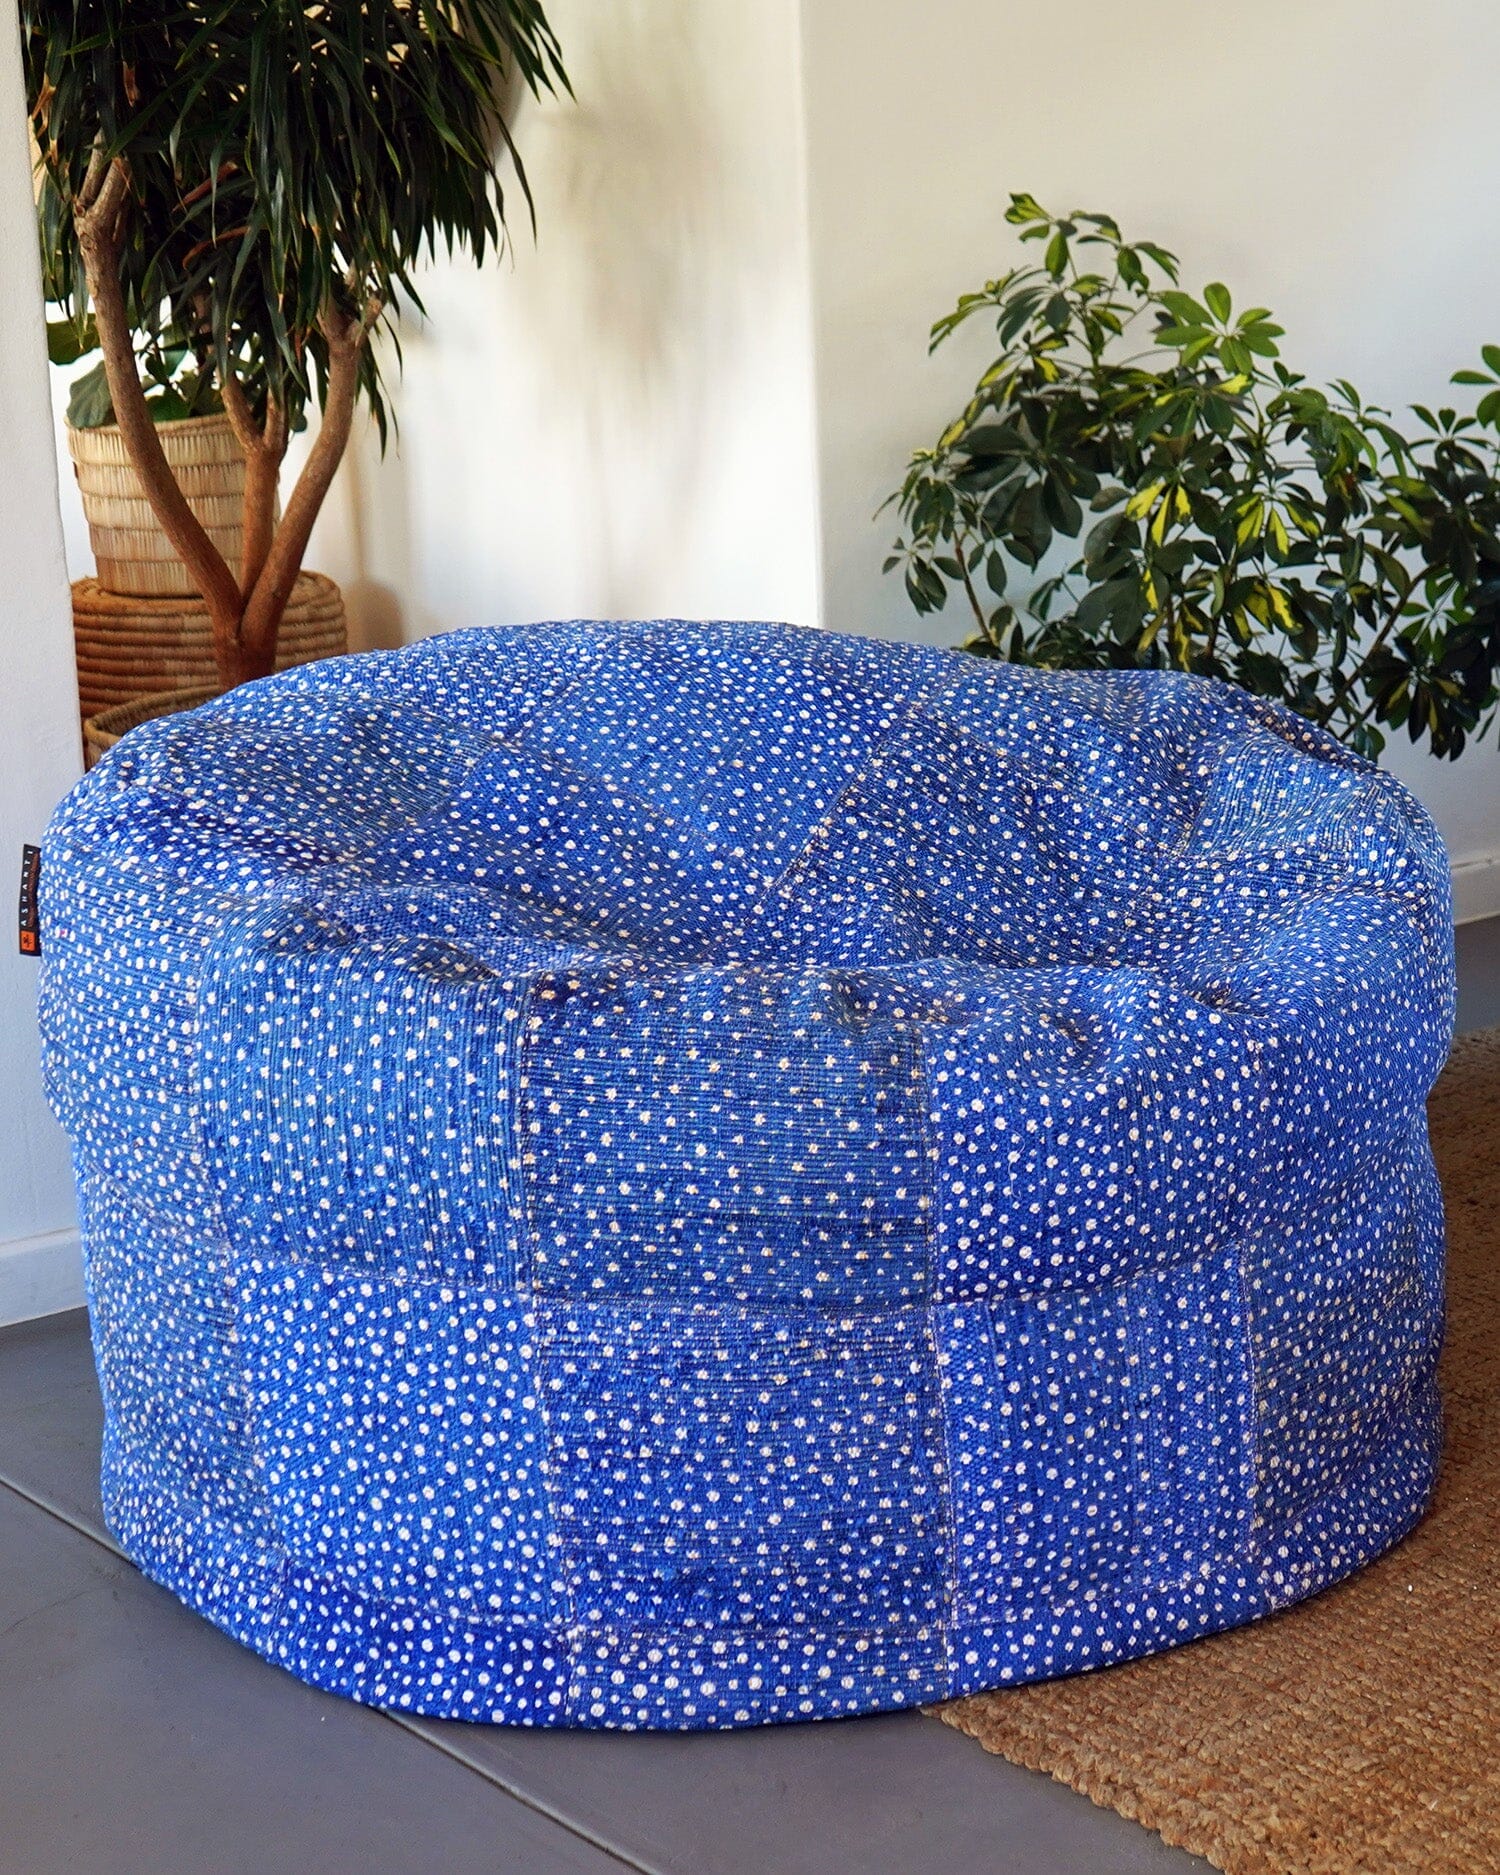 Limited Edition - Big BoriBori Bean Bag AshantiDesign Filled (SA Only) Blue Polka Dot 